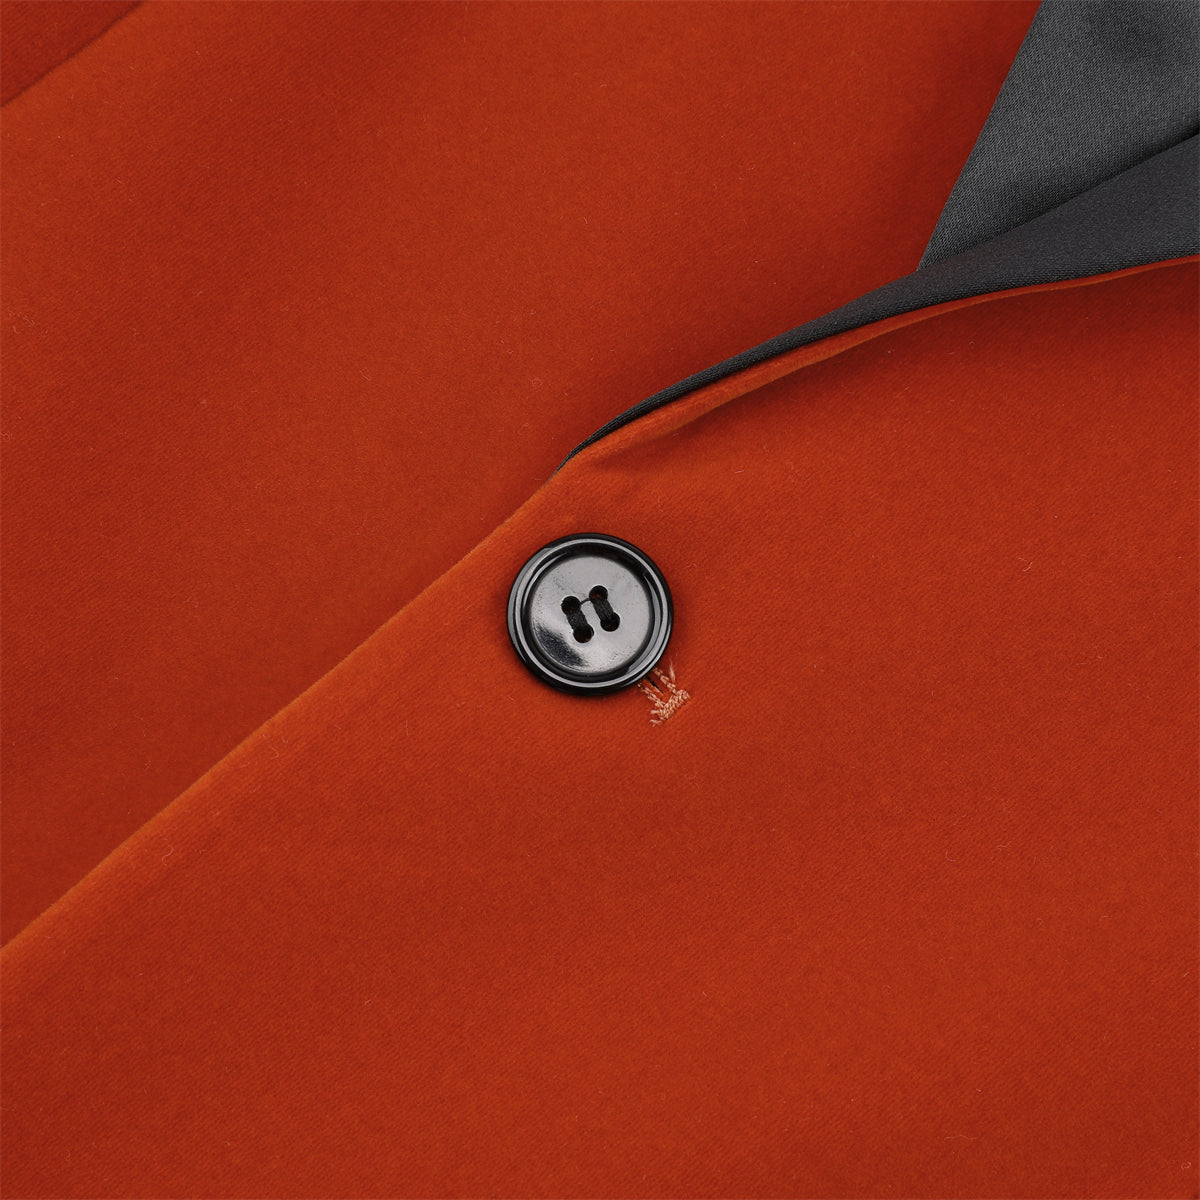 Slim Fit 2-Piece Orange Pleuche Velvet Tuxedo Suit